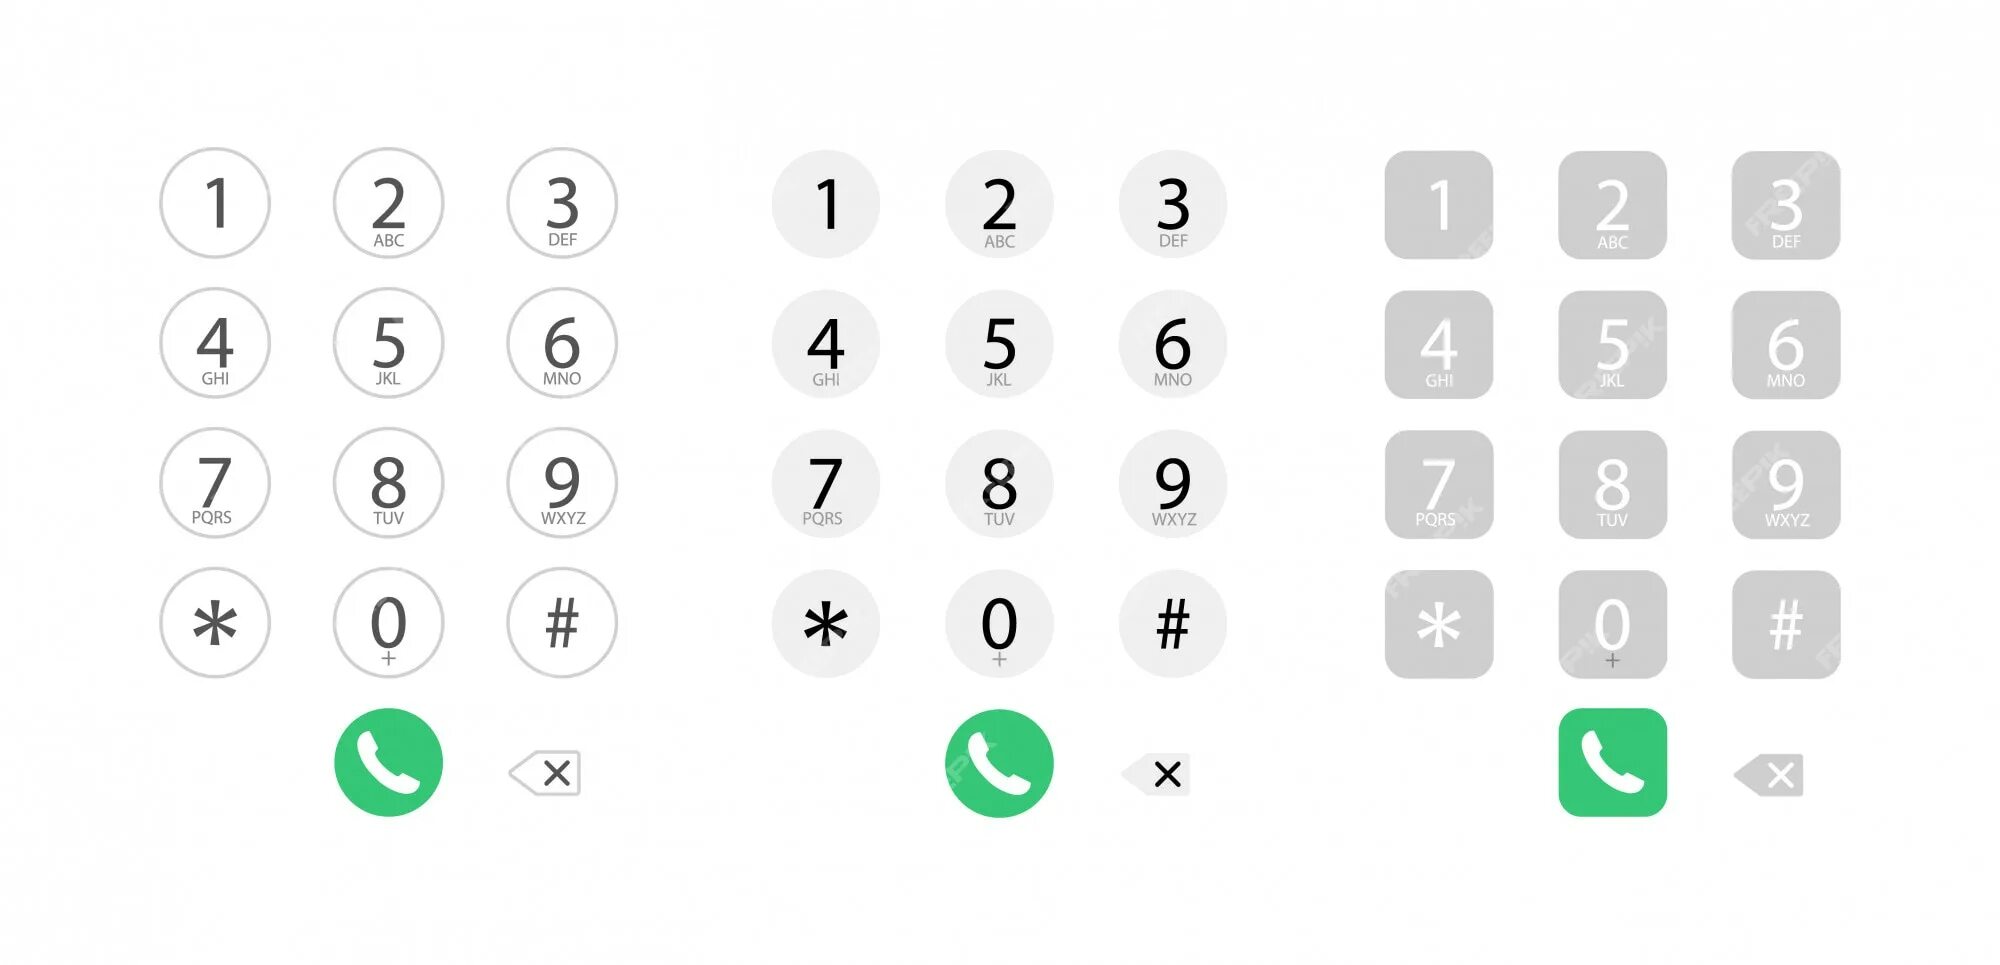 Группа набора номера. Набор номера. Экран набора номера. Набор номера телефона. Клавиатура телефона цифры.